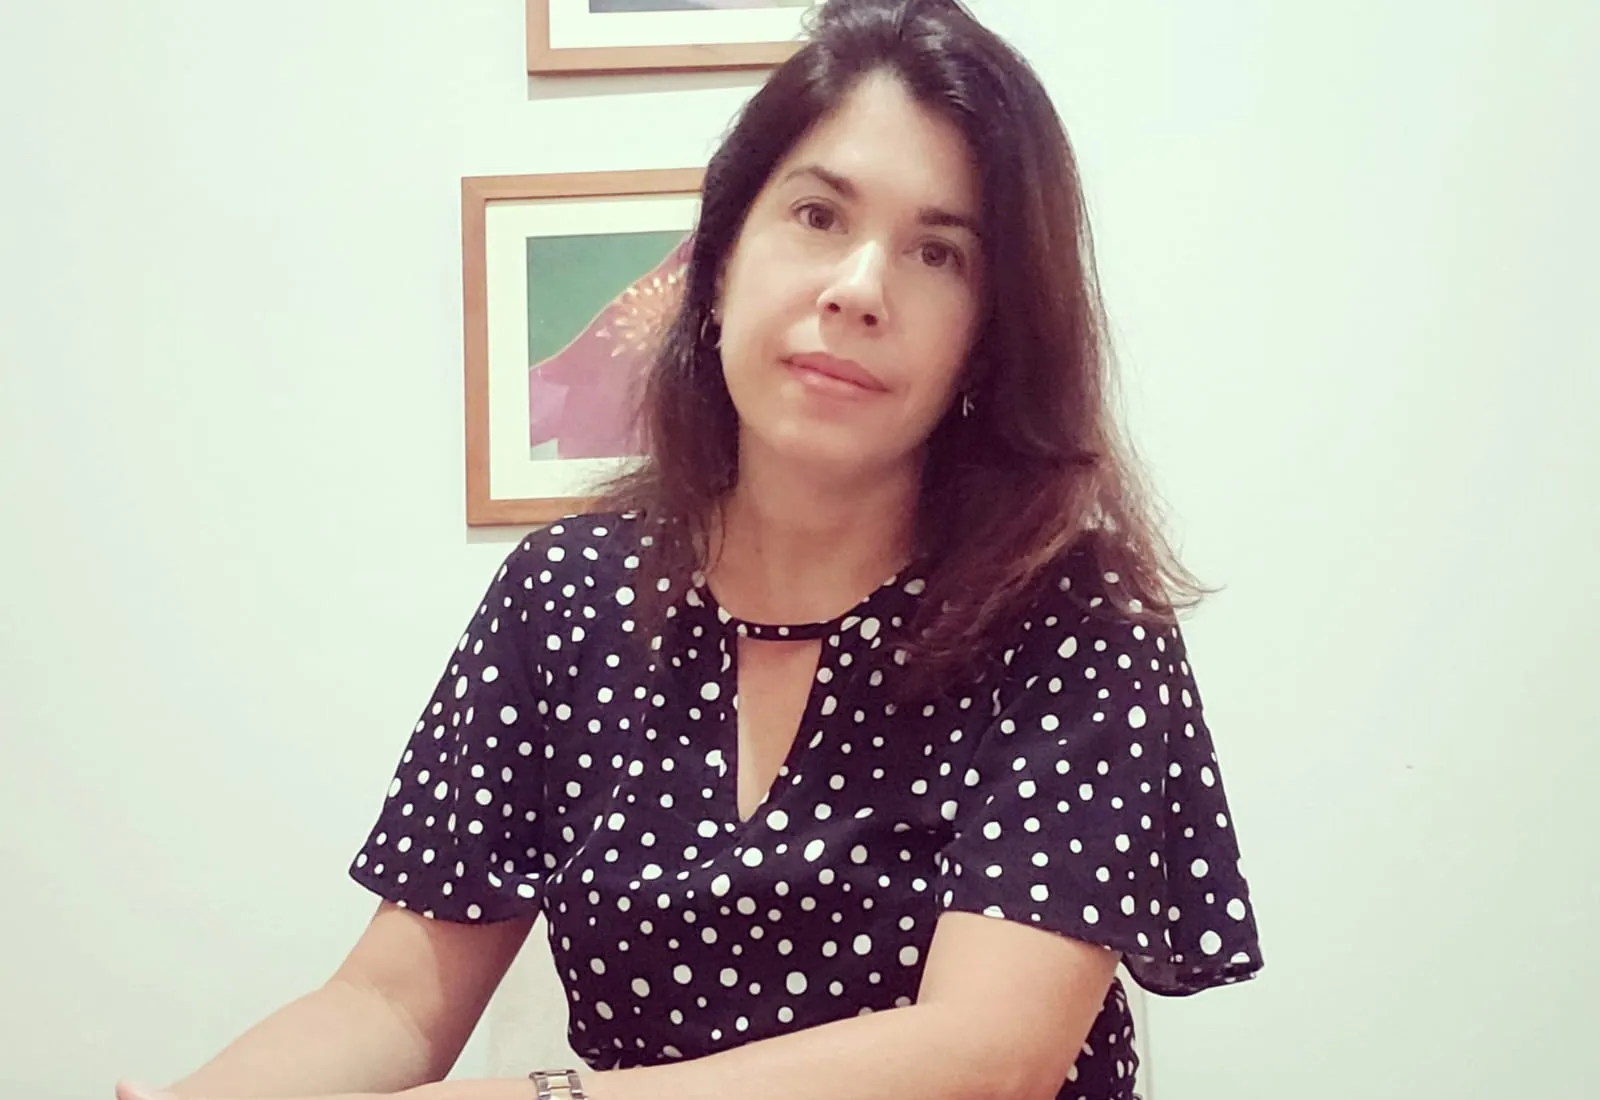 Alessandra da Costa Meira é psicóloga da equipe técnica da Coordenadoria da Infância e Juventude, grupo ligado ao Tribunal de Justiça da Bahia